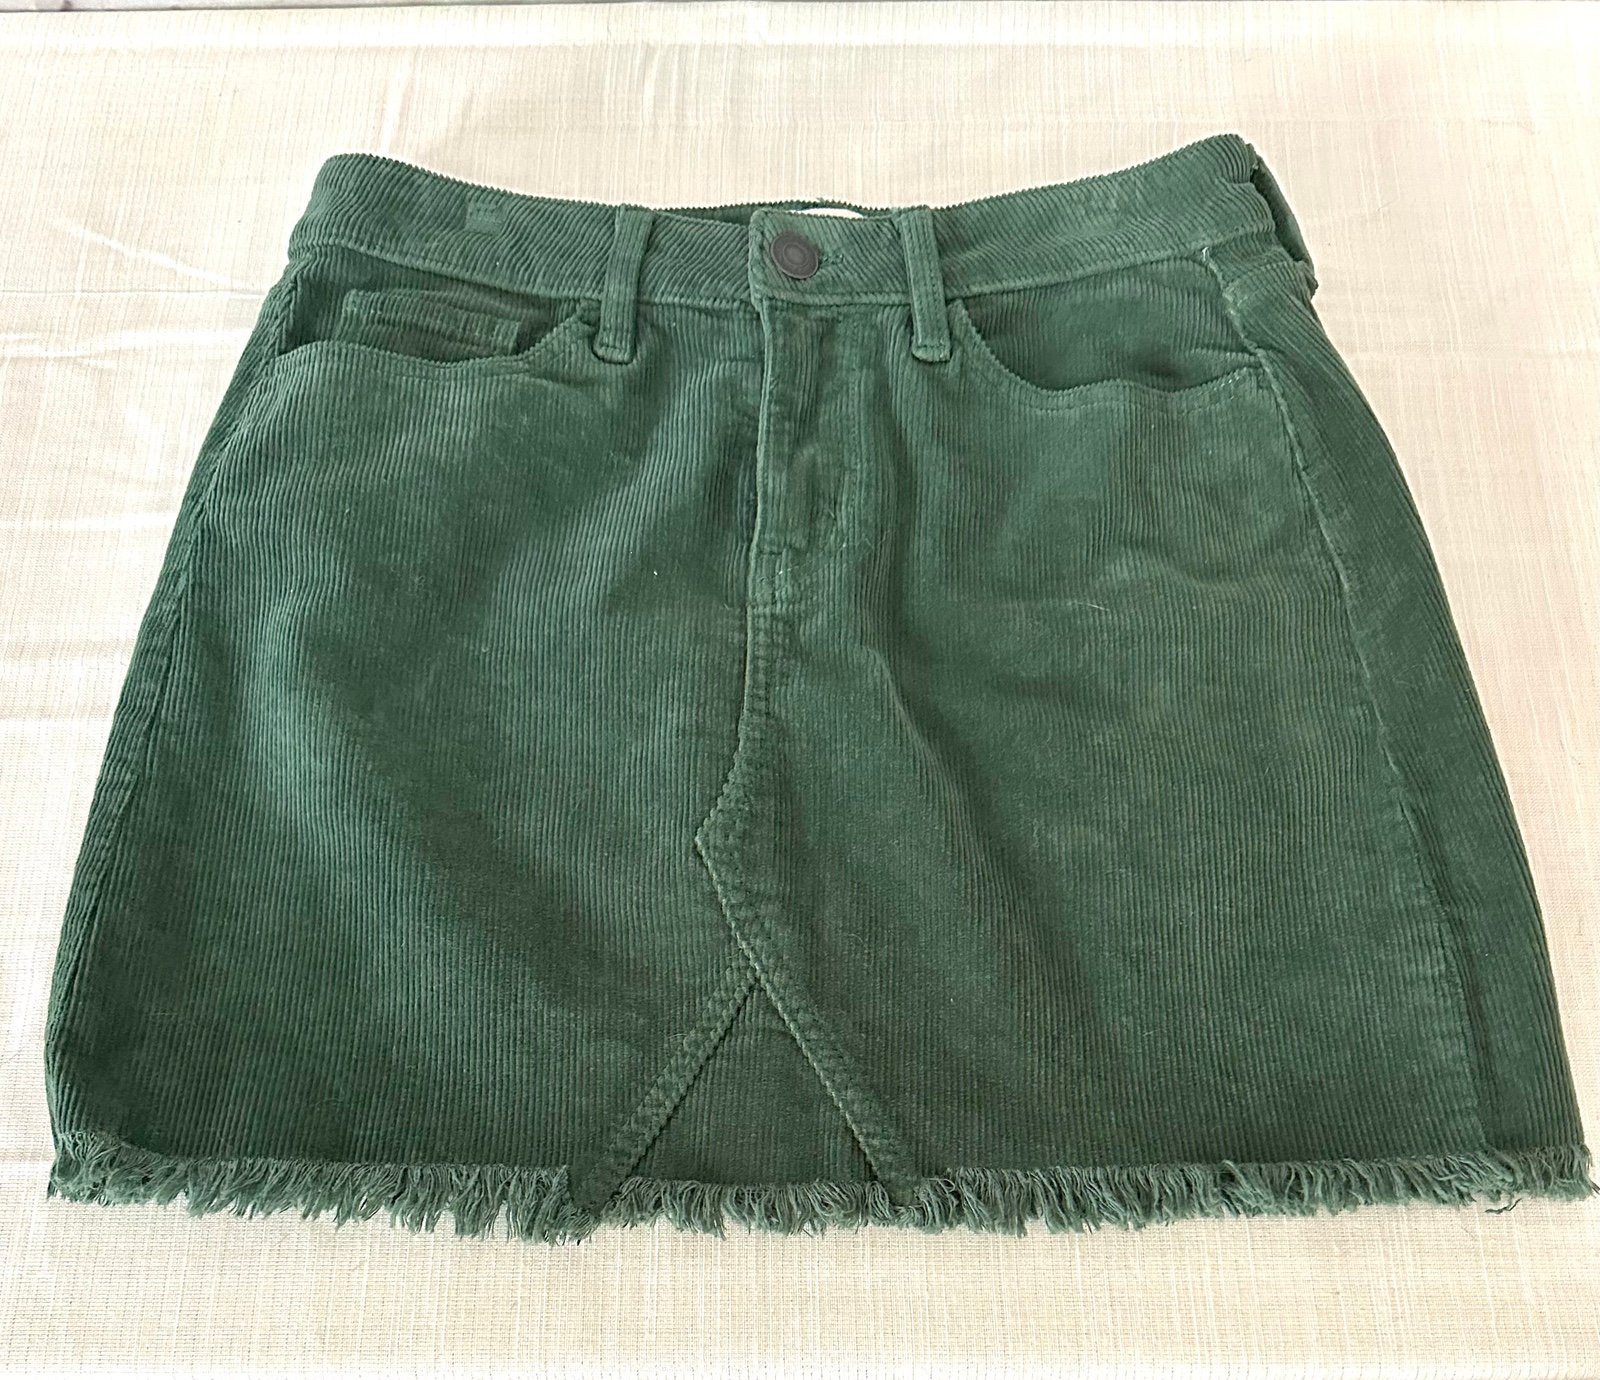 Special offer  Green corduroy skirt size 9 nUZyx98BJ Bu